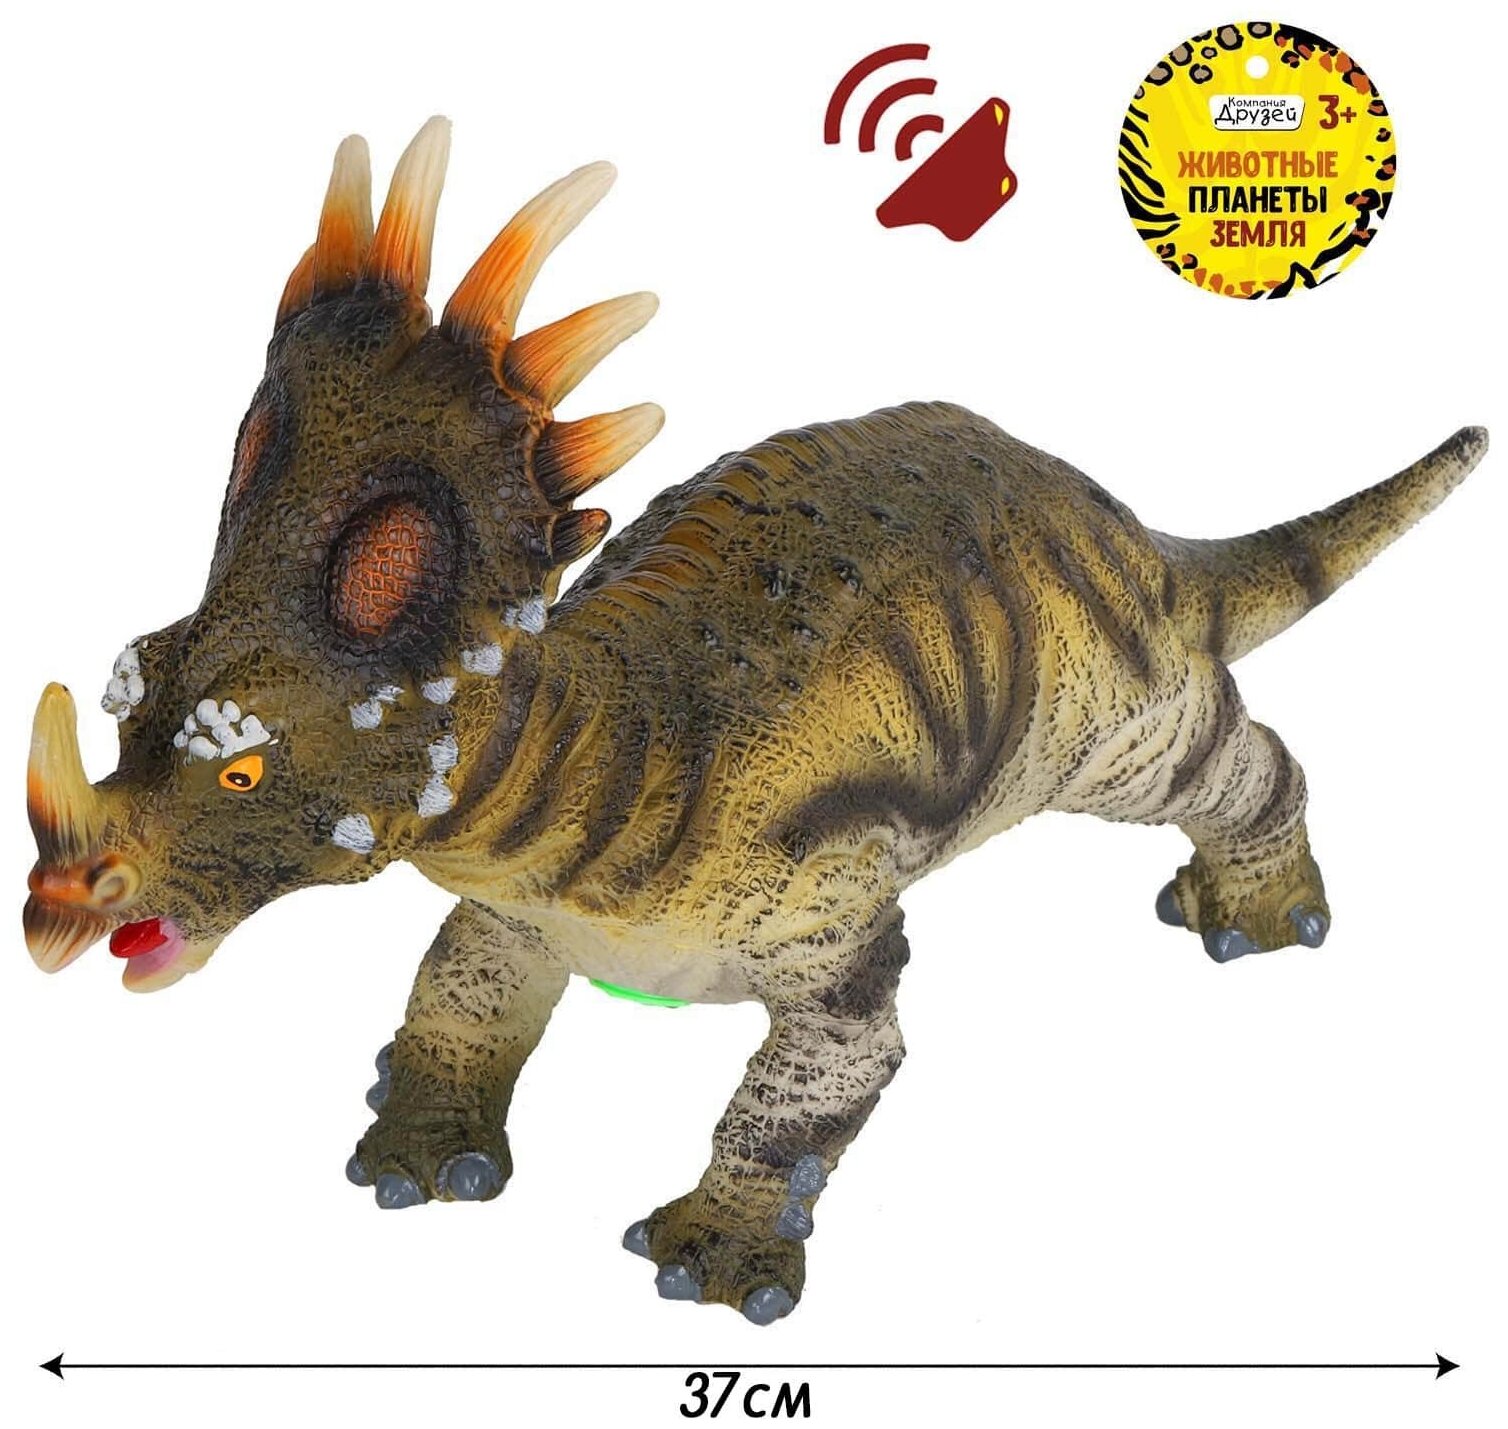 ТМ "компания друзей", серия "Животные планеты Земля". Динозавр с чипом, звук - рёв животного, эластичная поверхность с шероховатостями, мягкий наполнитель, бирка, 37*9*18 JB0207080